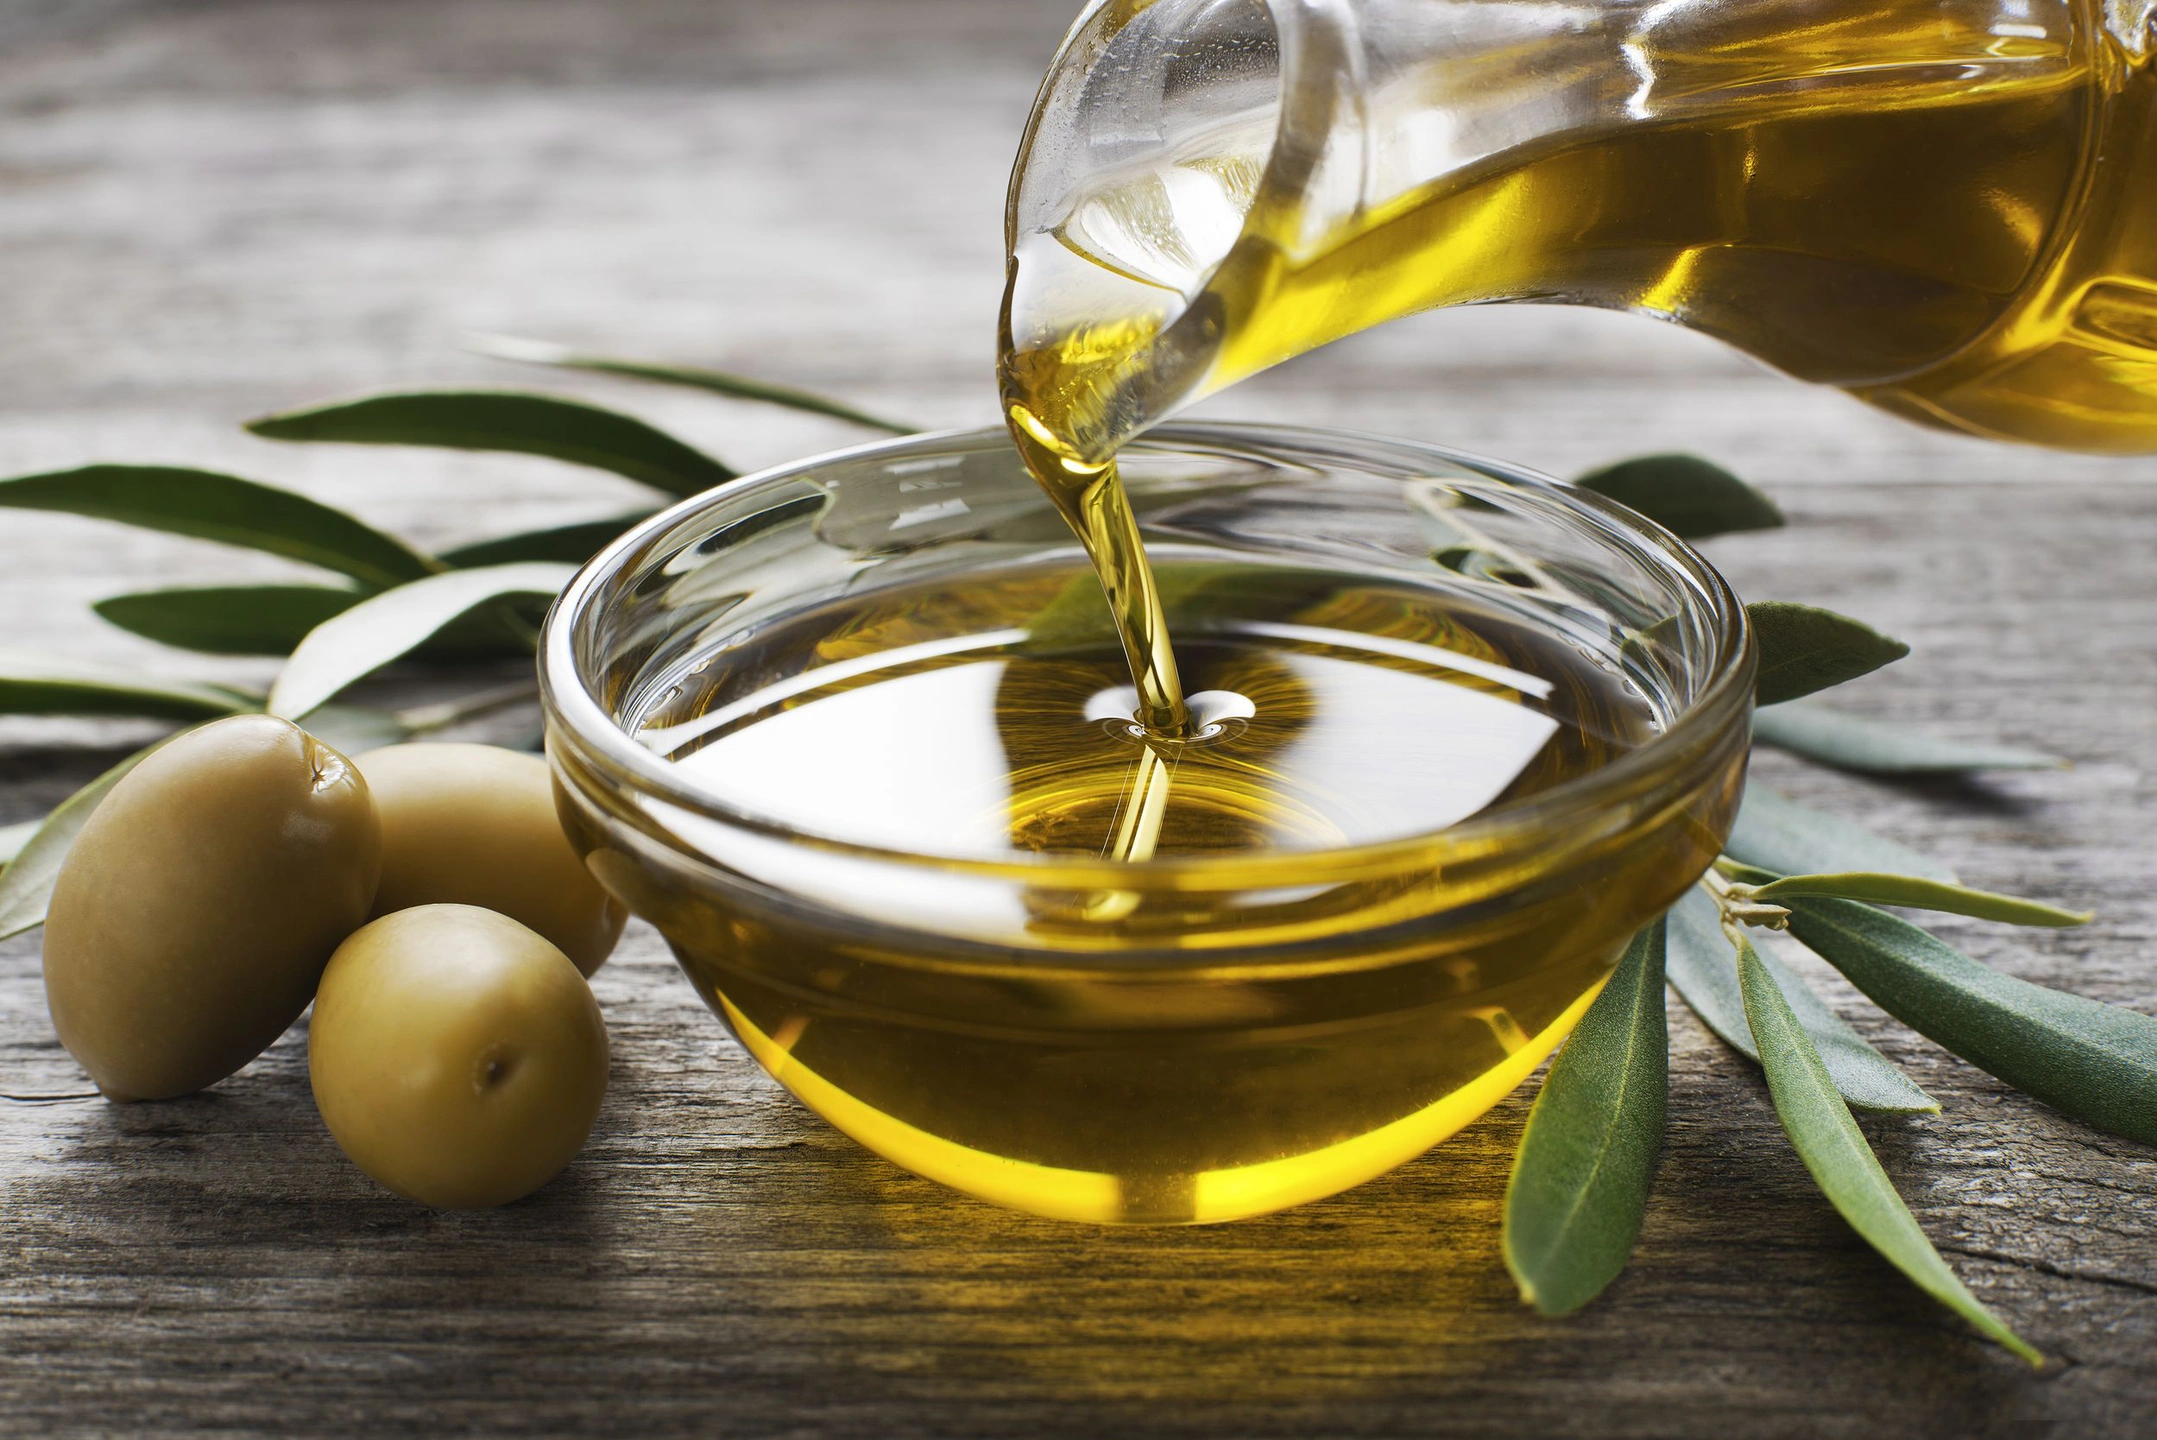 Американские учёные рекомендовали есть оливковое масло для снижения холестерина